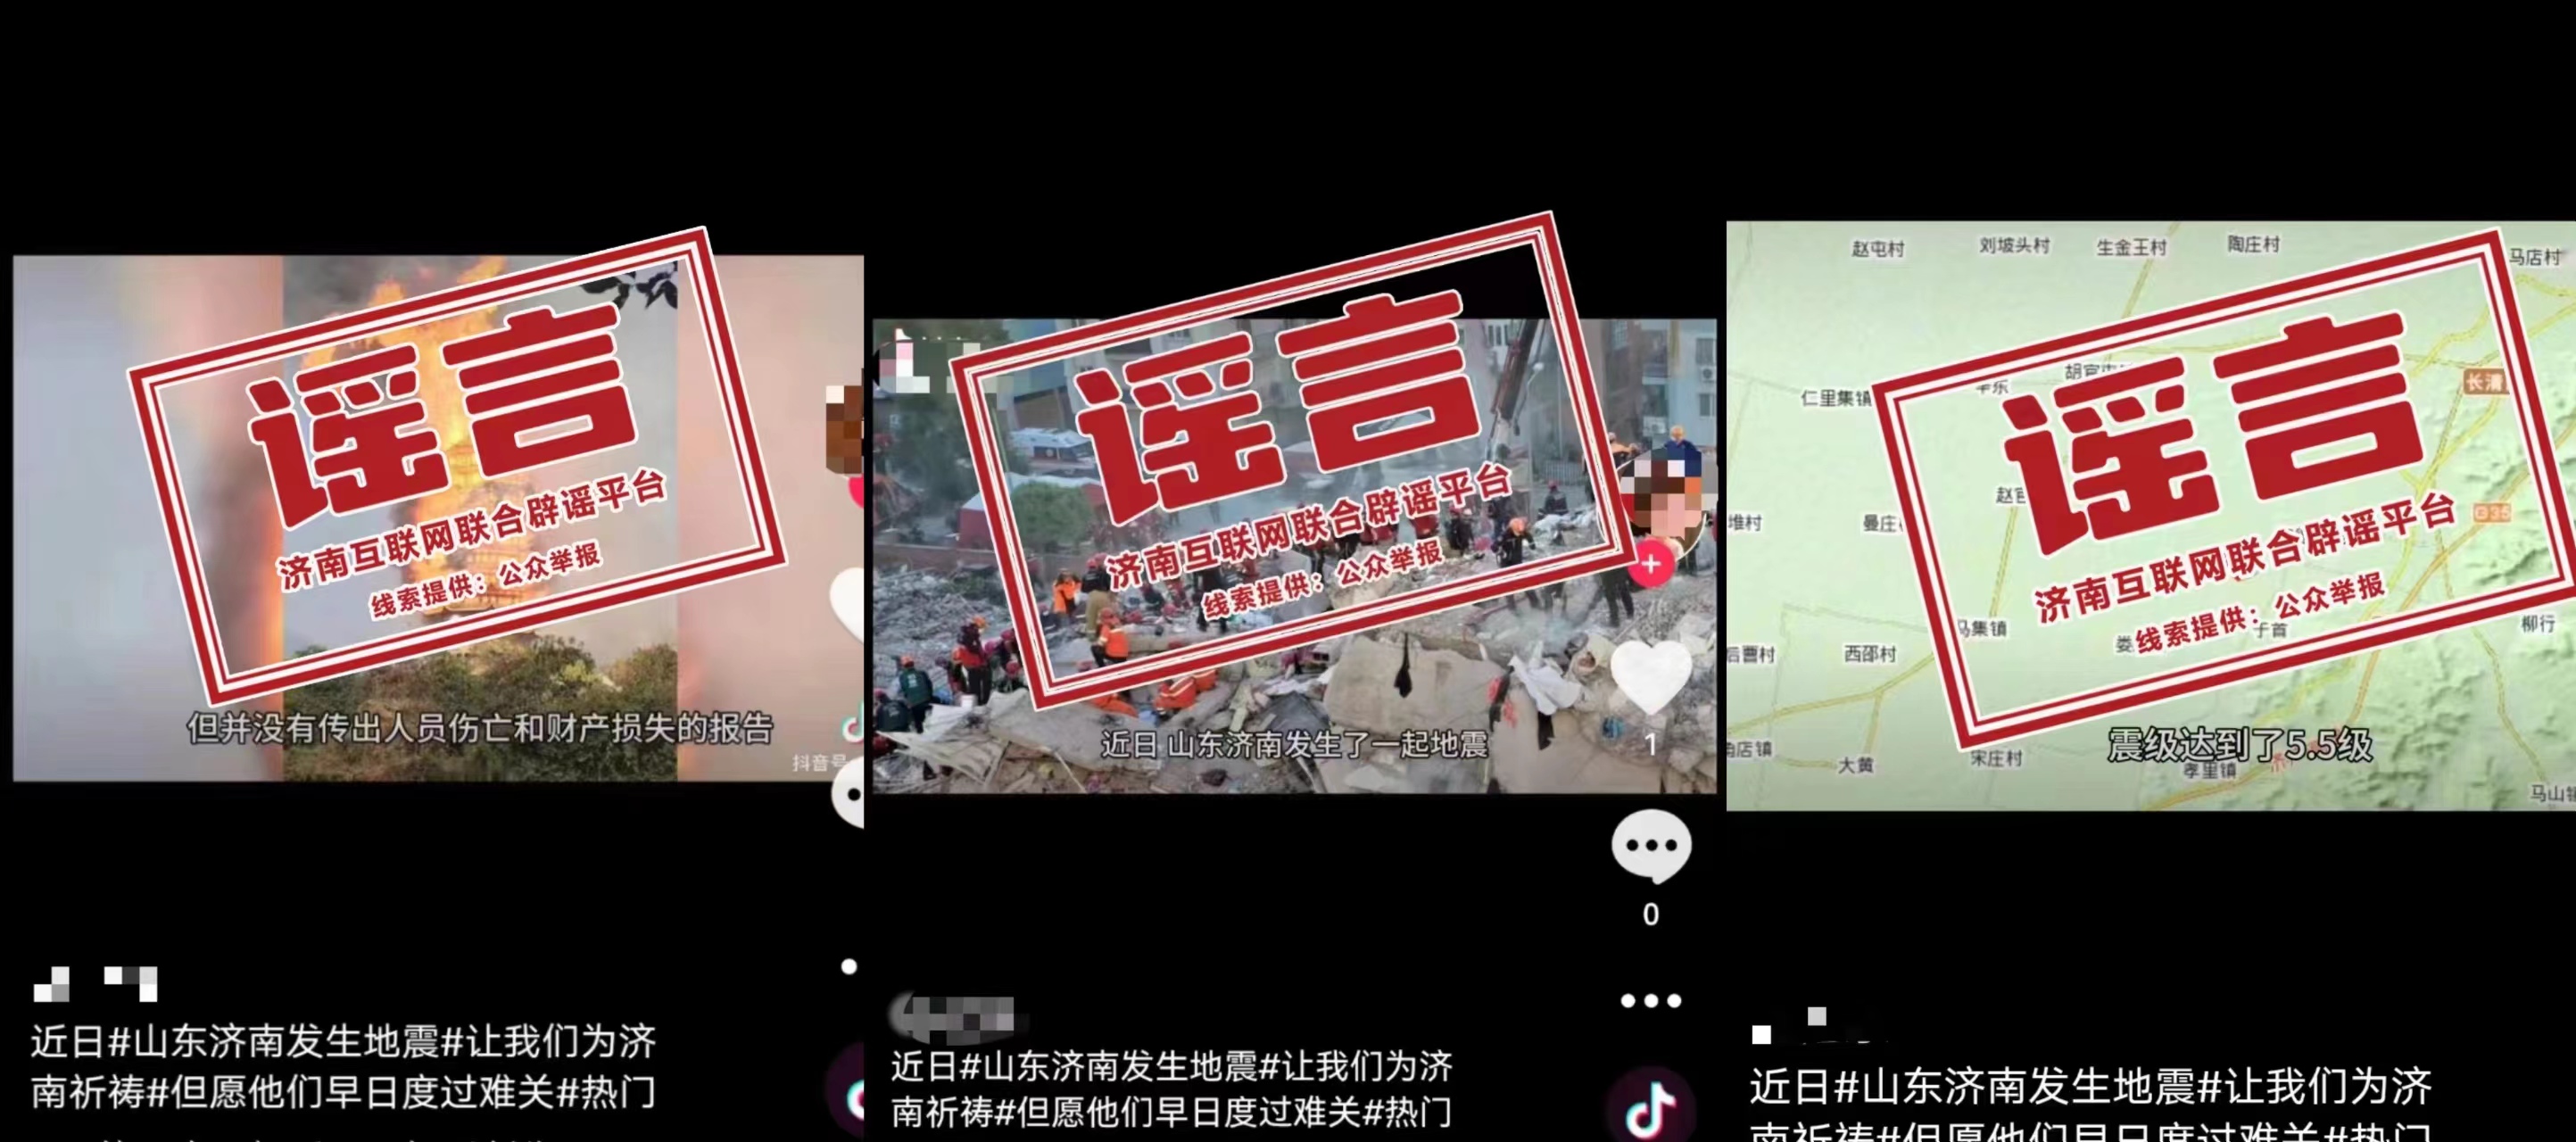 发布谣言的社交平台账号内容 图源	：中国互联网联合辟谣平台